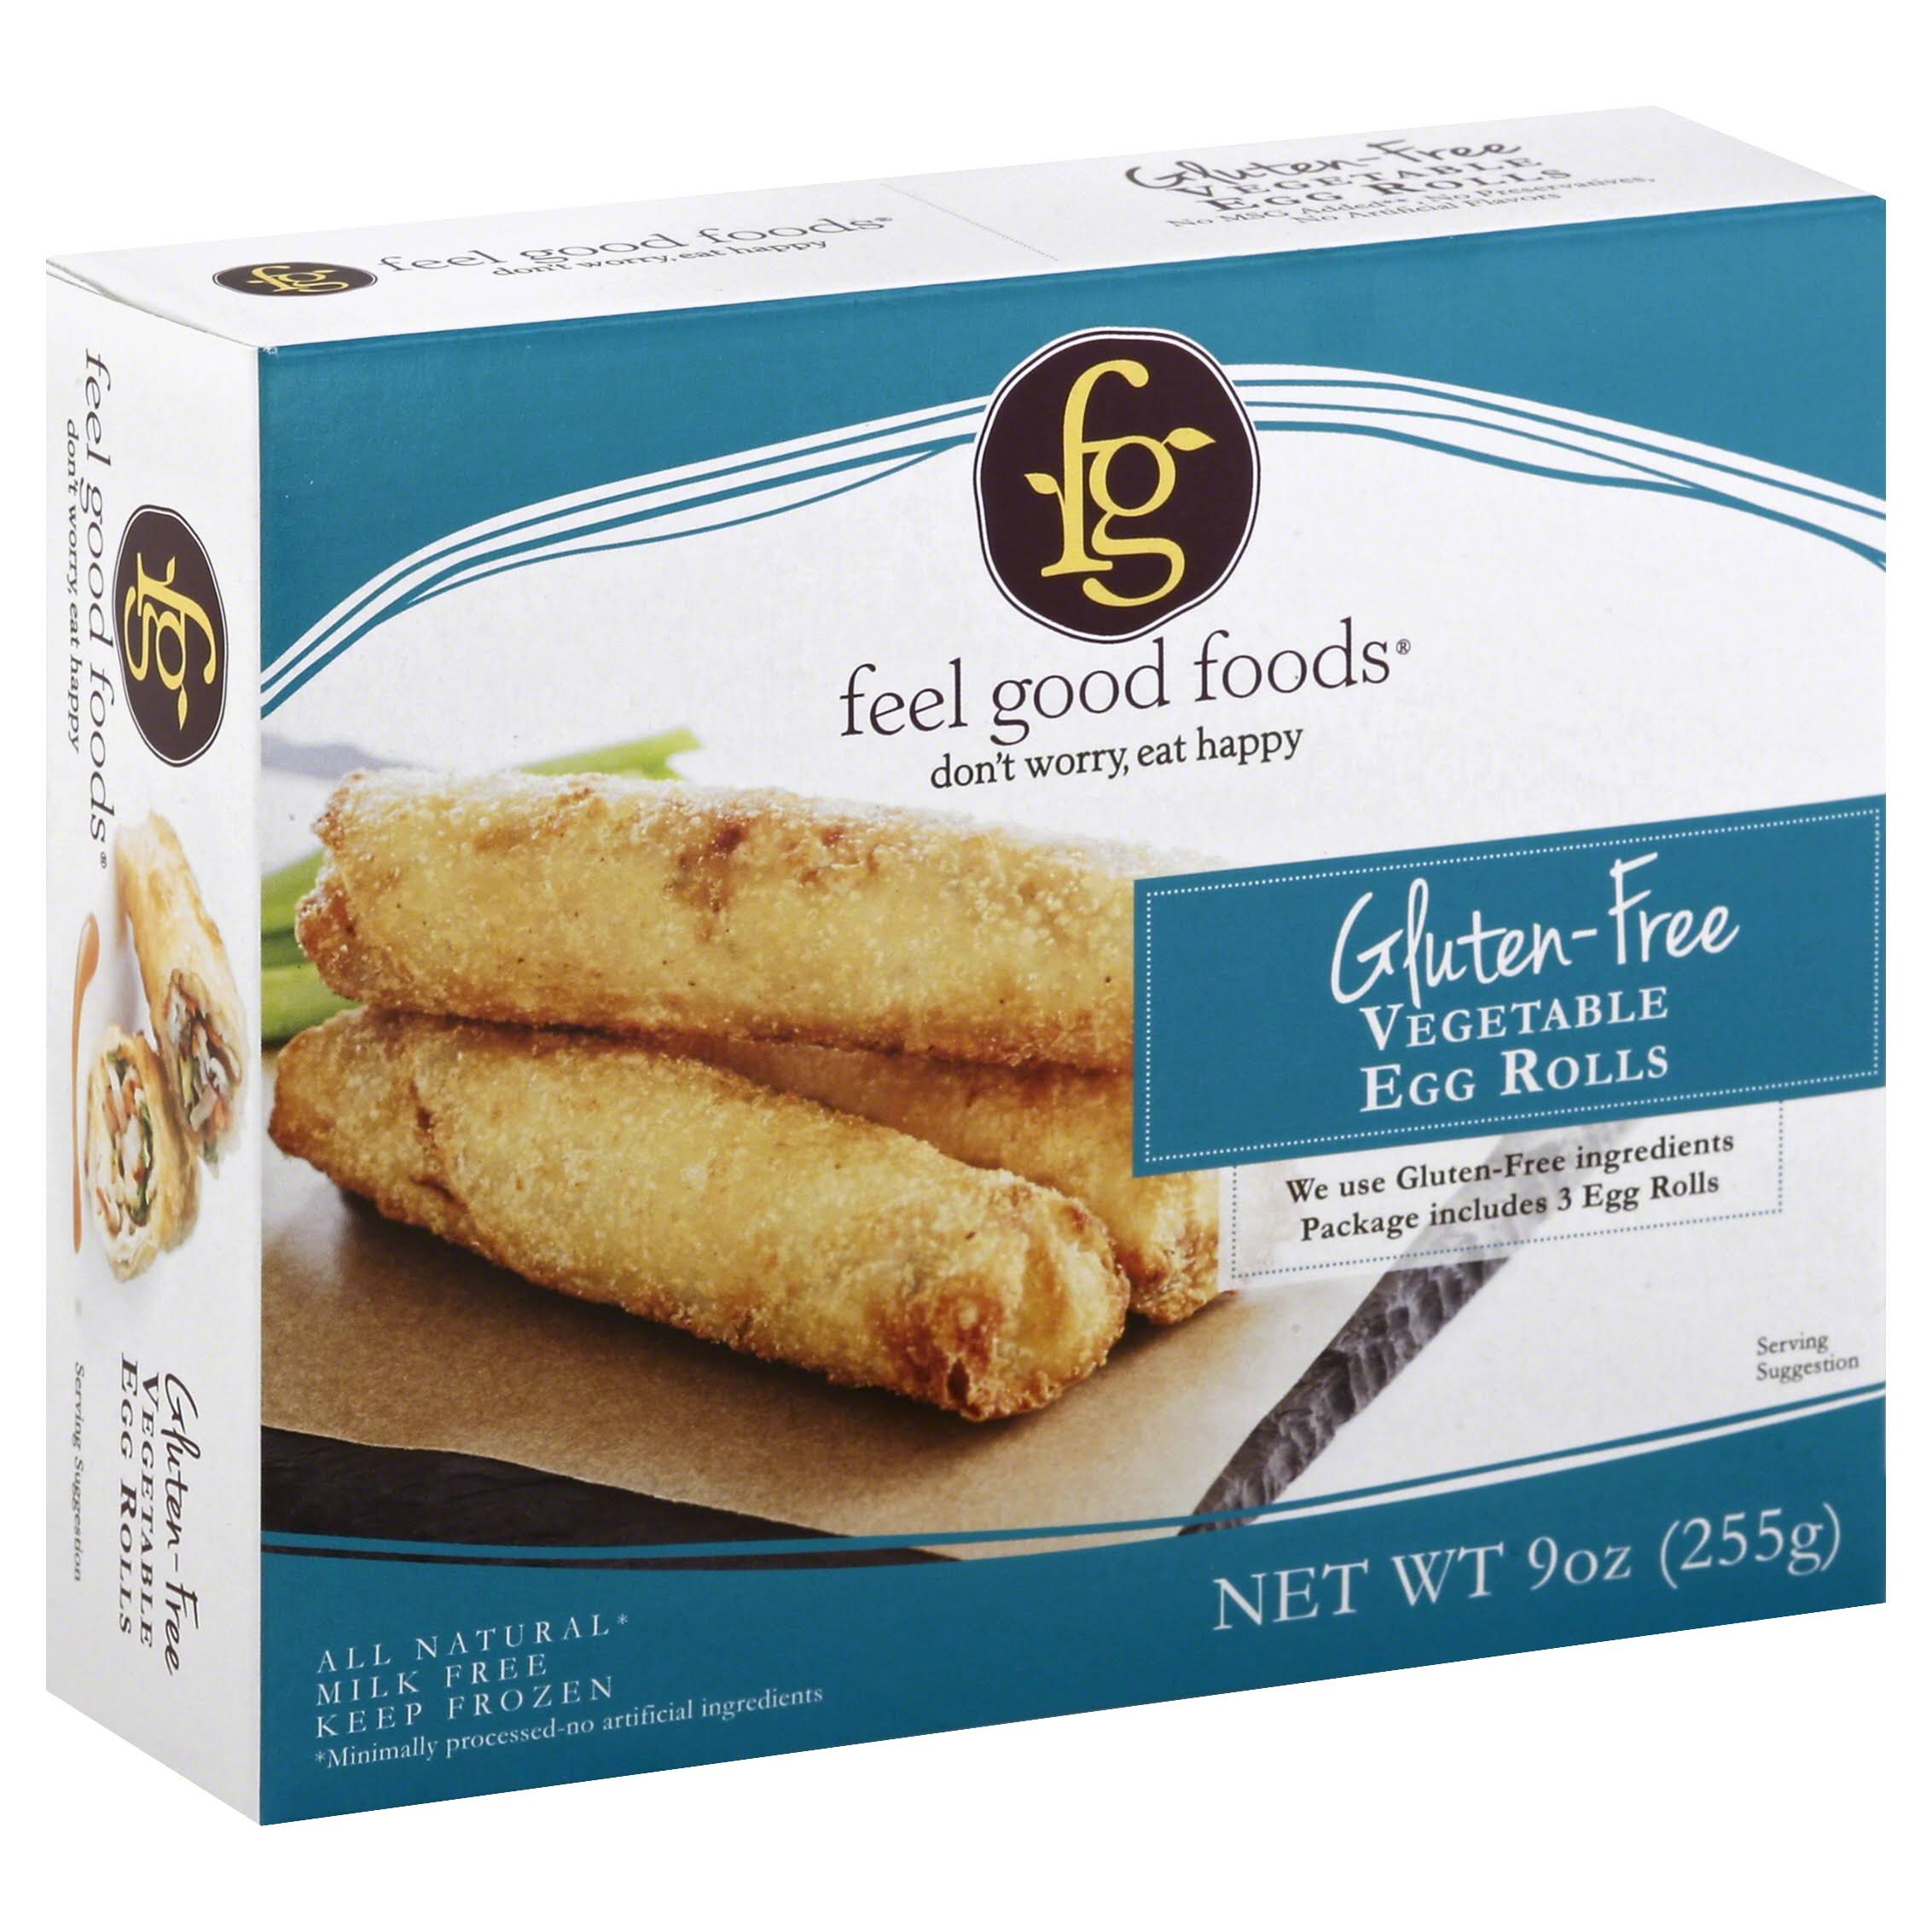 Feel Good Foods Vegetable Egg Rolls, Gluten Free - 9 oz box